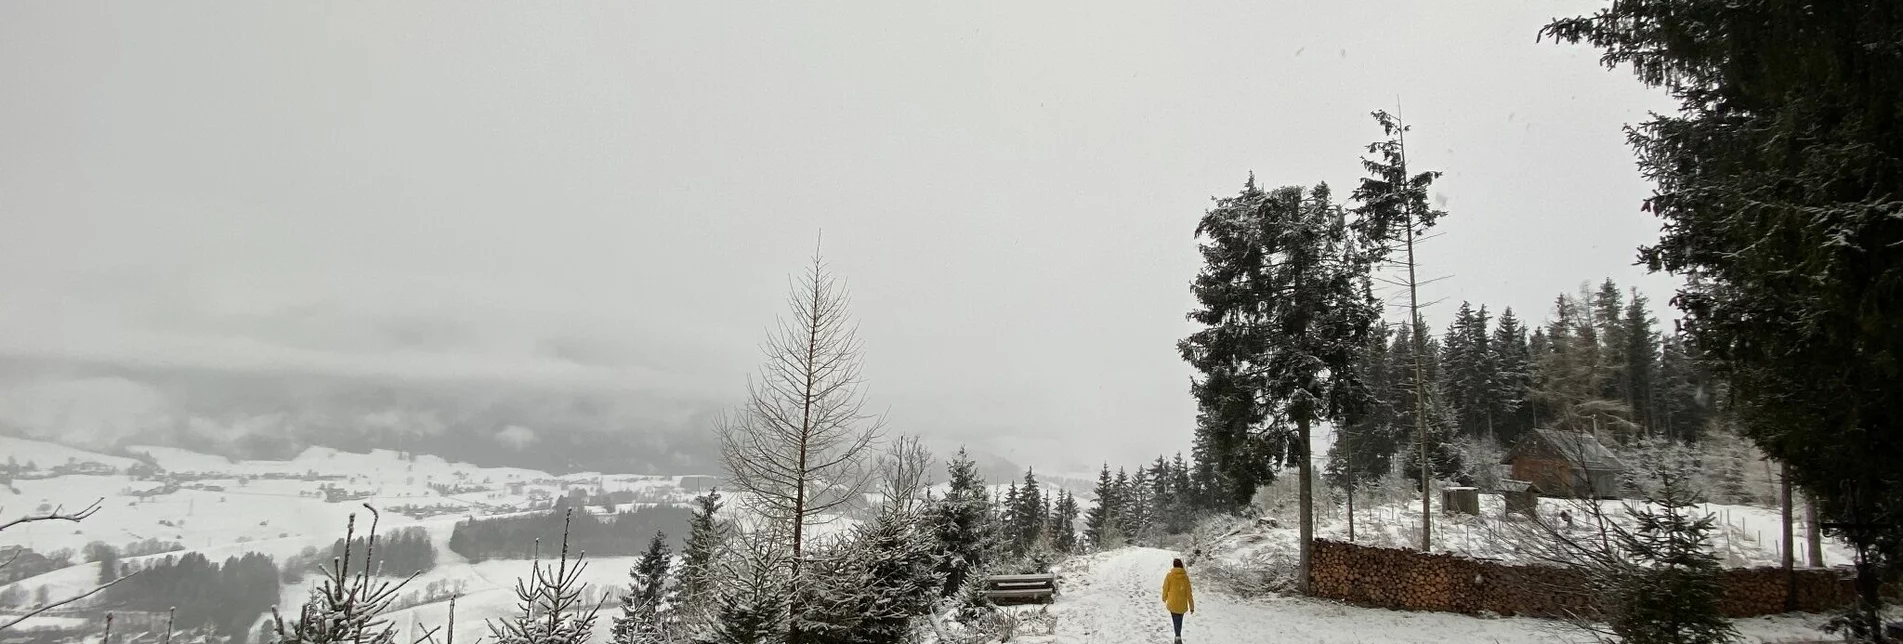 Winterwandern Winterwanderung zum Kulmgipfel - Touren-Impression #1 | © Erlebnisregion Schladming-Dachstein